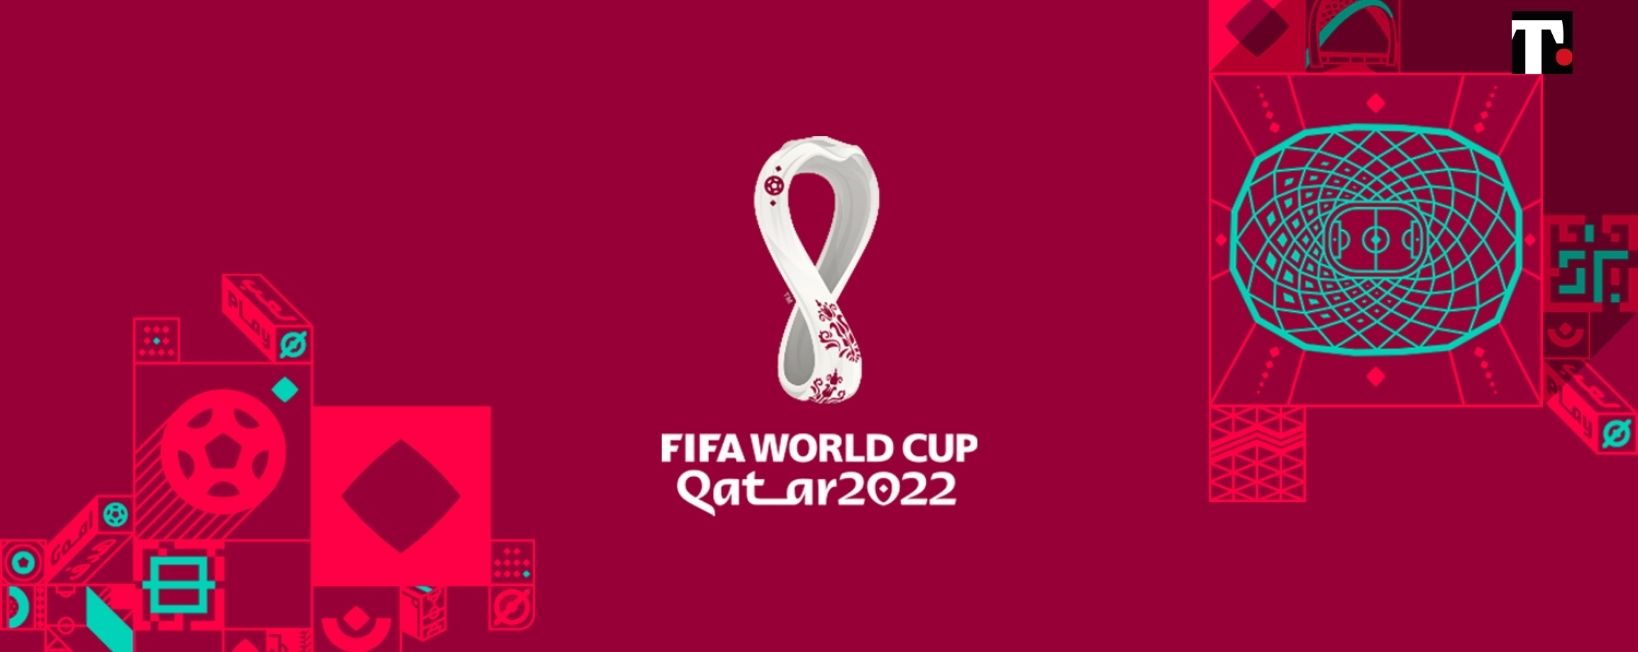 sorteggio playoff mondiali 2022 dove vederlo